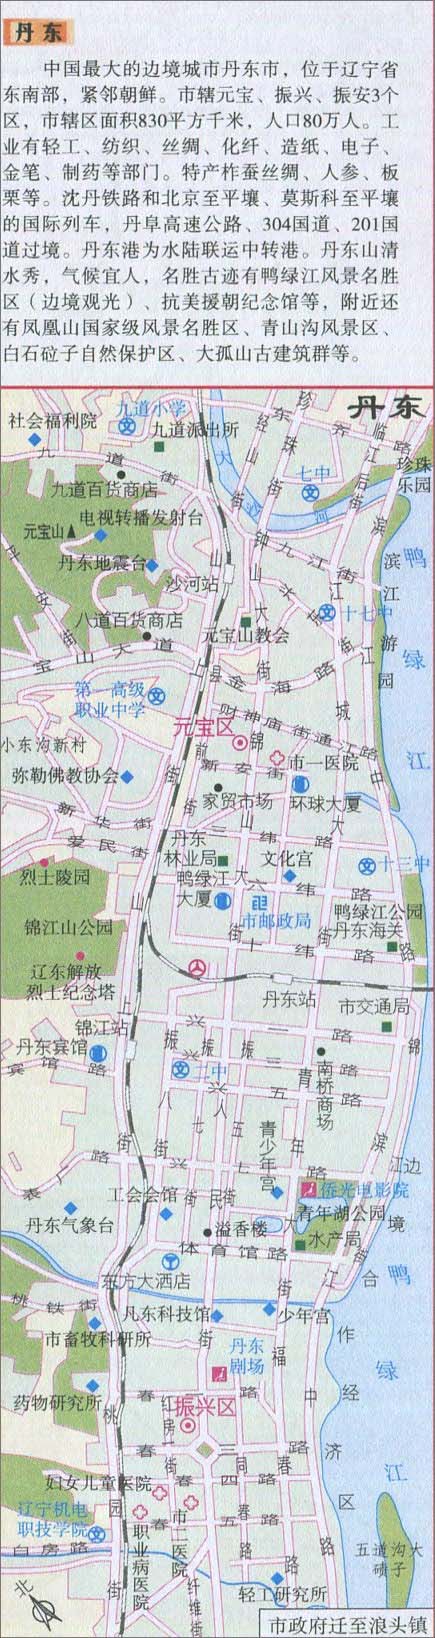 阜新   辽阳   盘锦   铁岭   朝阳   葫芦岛 上一张地图: 丹东市图片